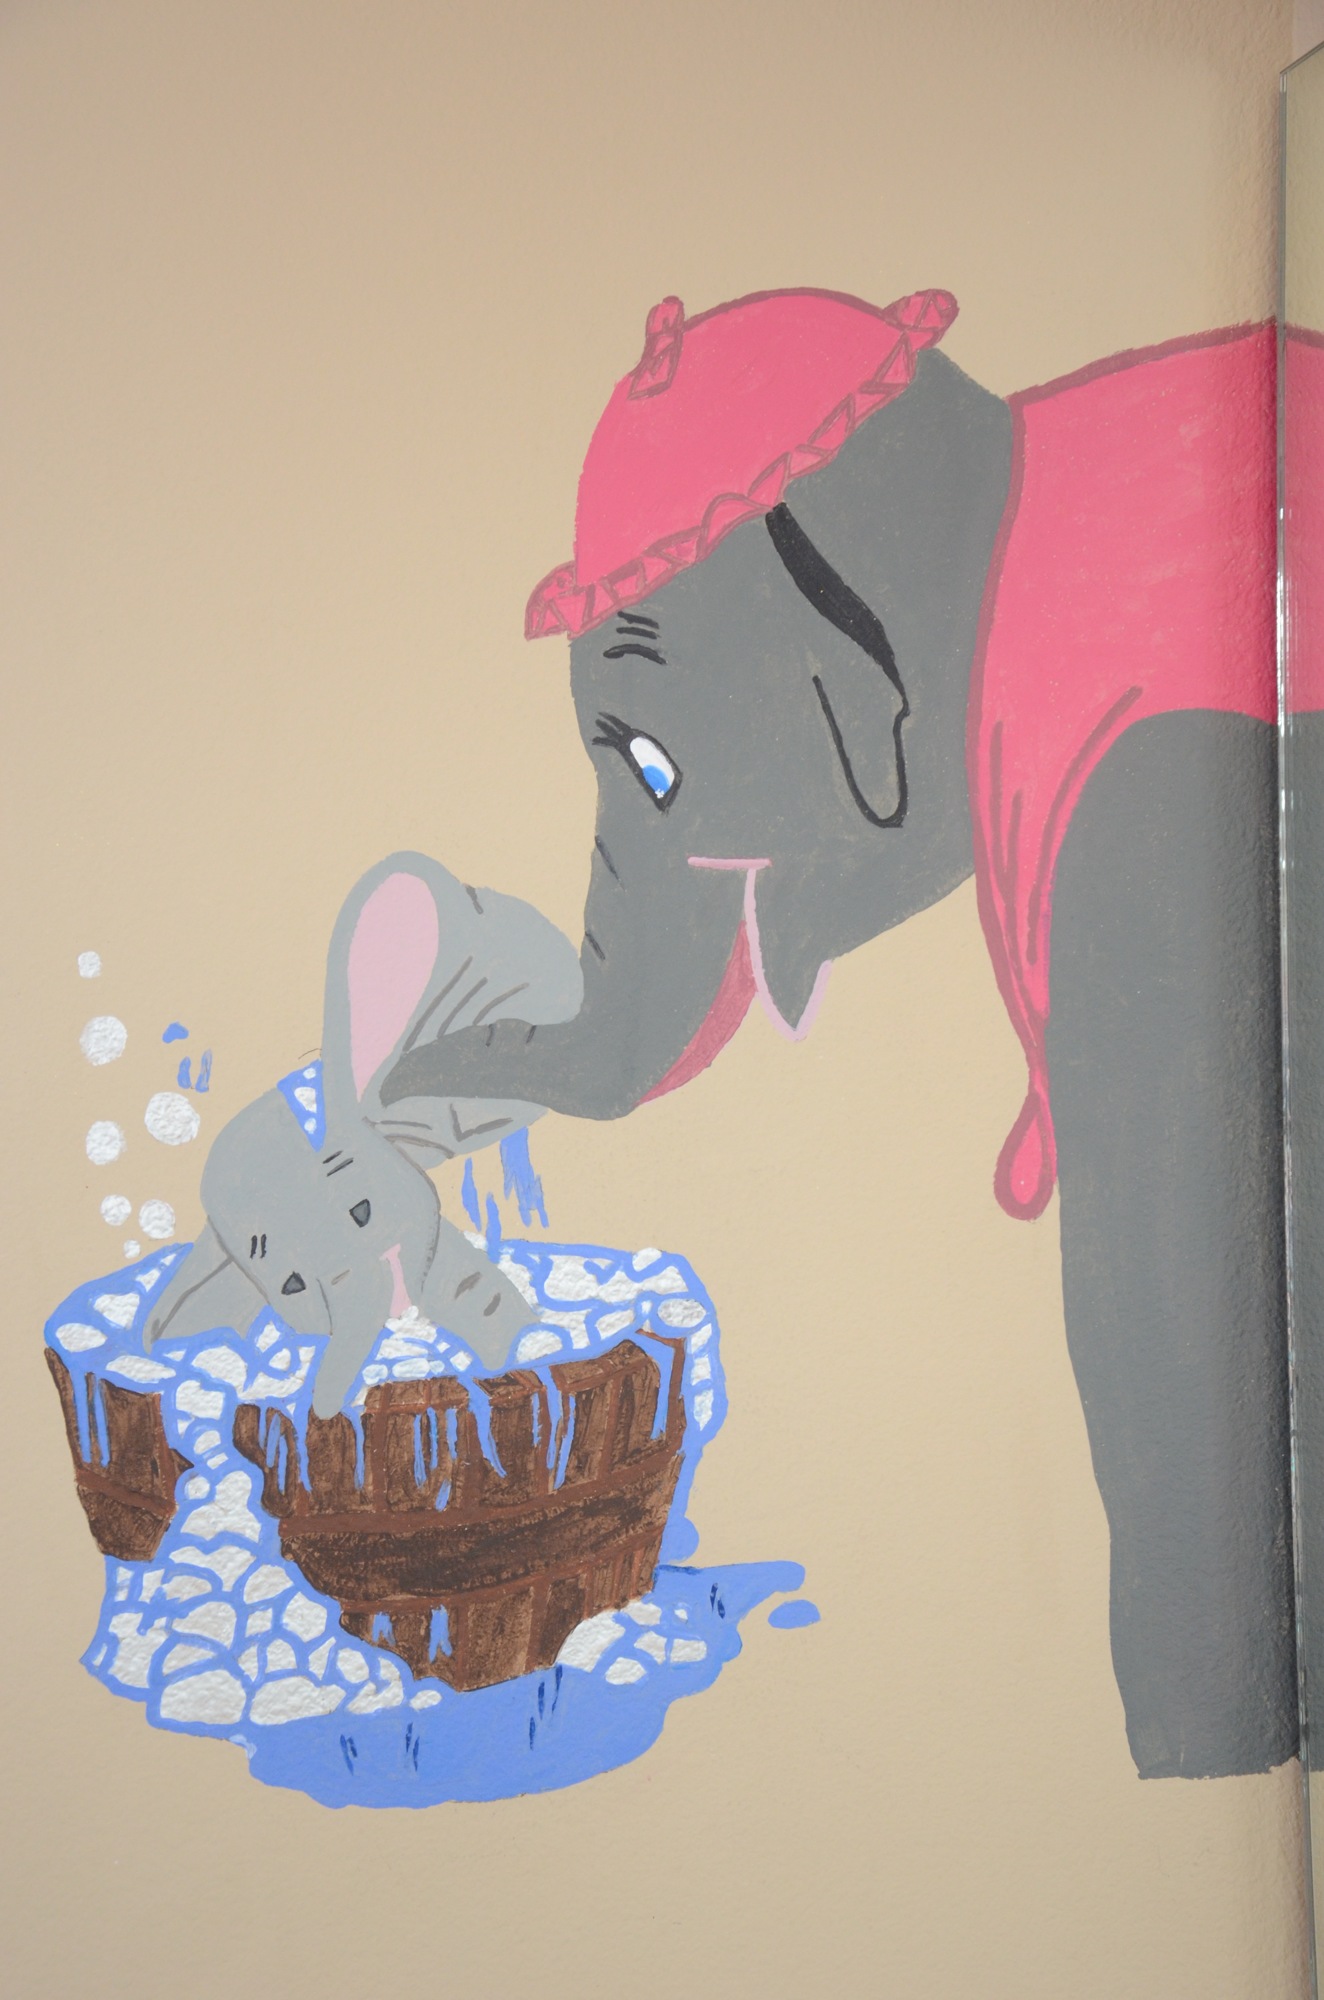 This scene from Dumbo is in her children’s bathroom. 